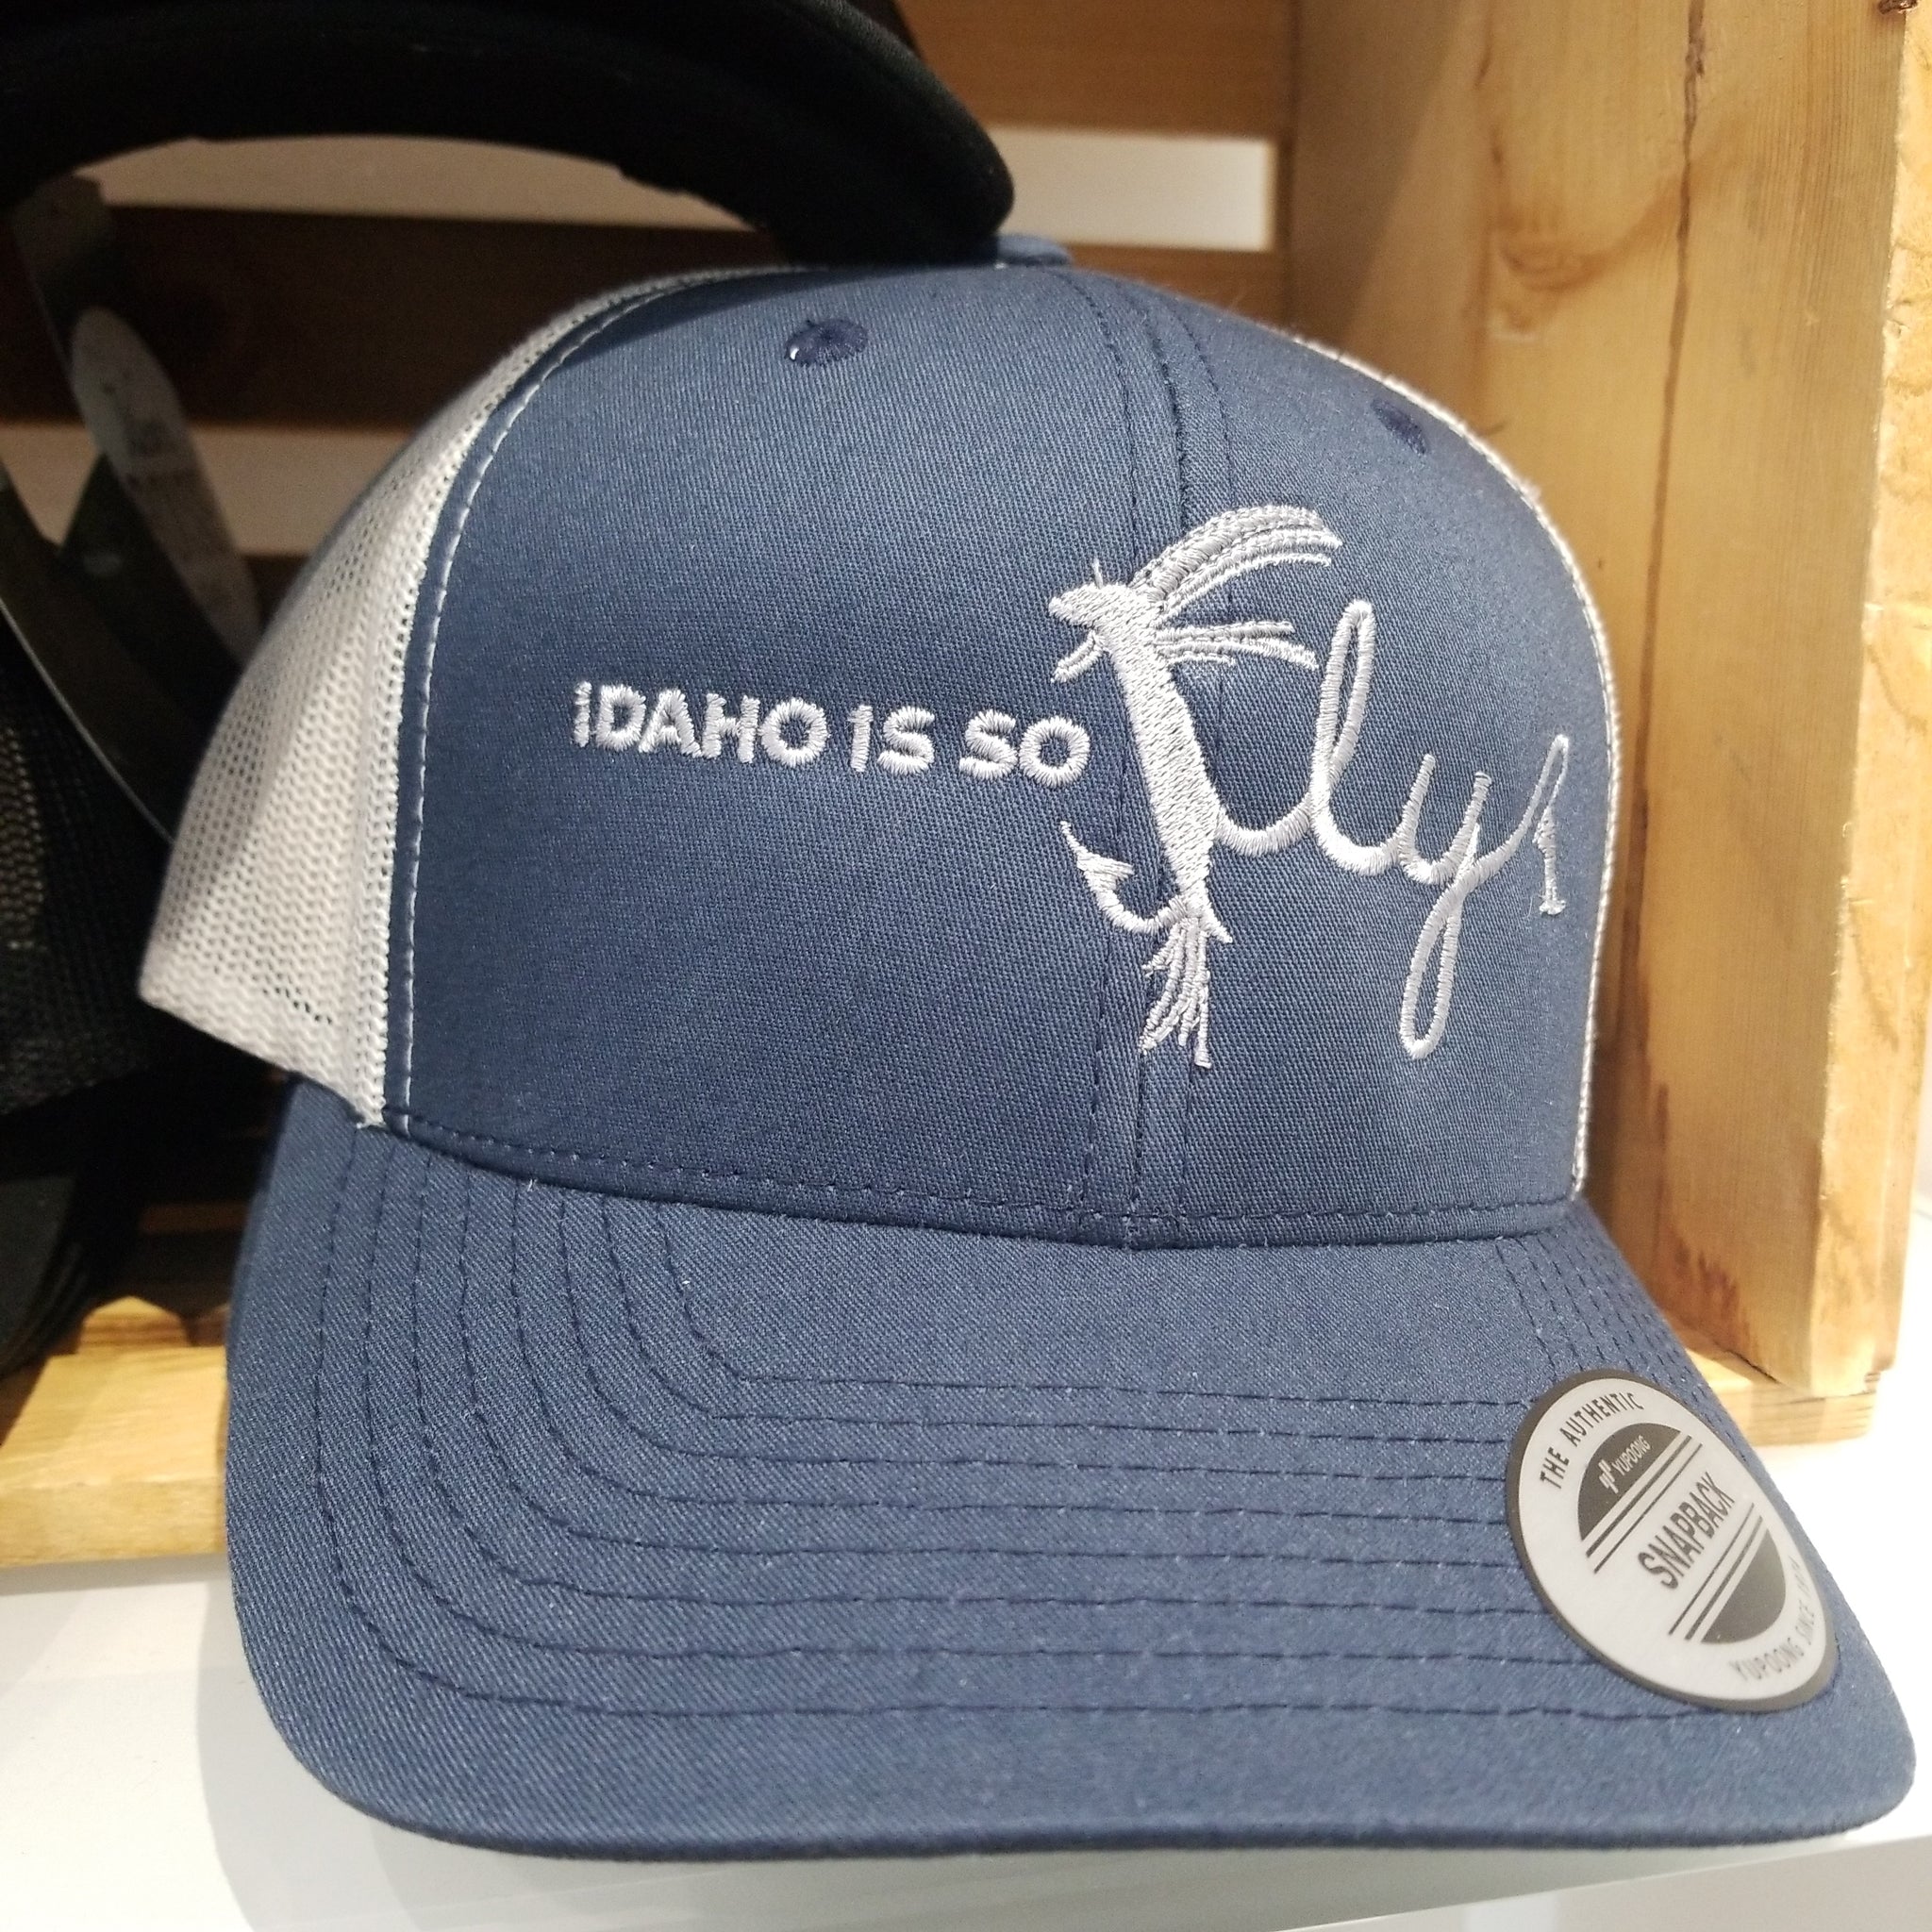 Idaho Is So Fly Navy/Silver Snapback Trucker